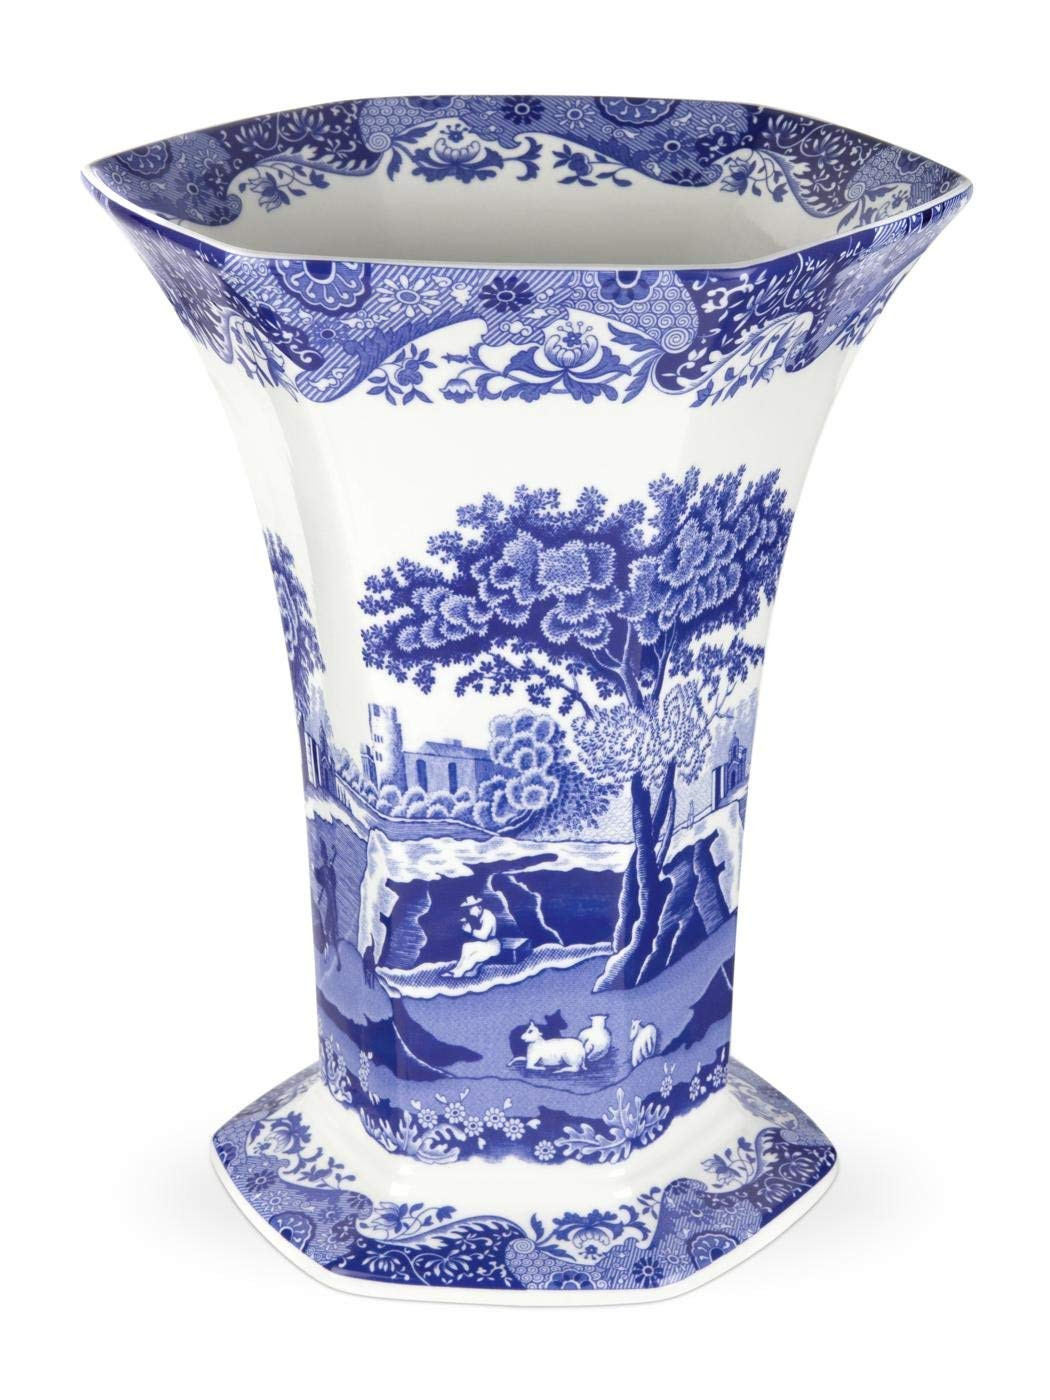 18 Wonderful Mikasa Florale 14 Inch Vase 2024 free download mikasa florale 14 inch vase of amazon com spode blue italian hexagonal vase home kitchen with regard to 71exb80cg1l sl1400